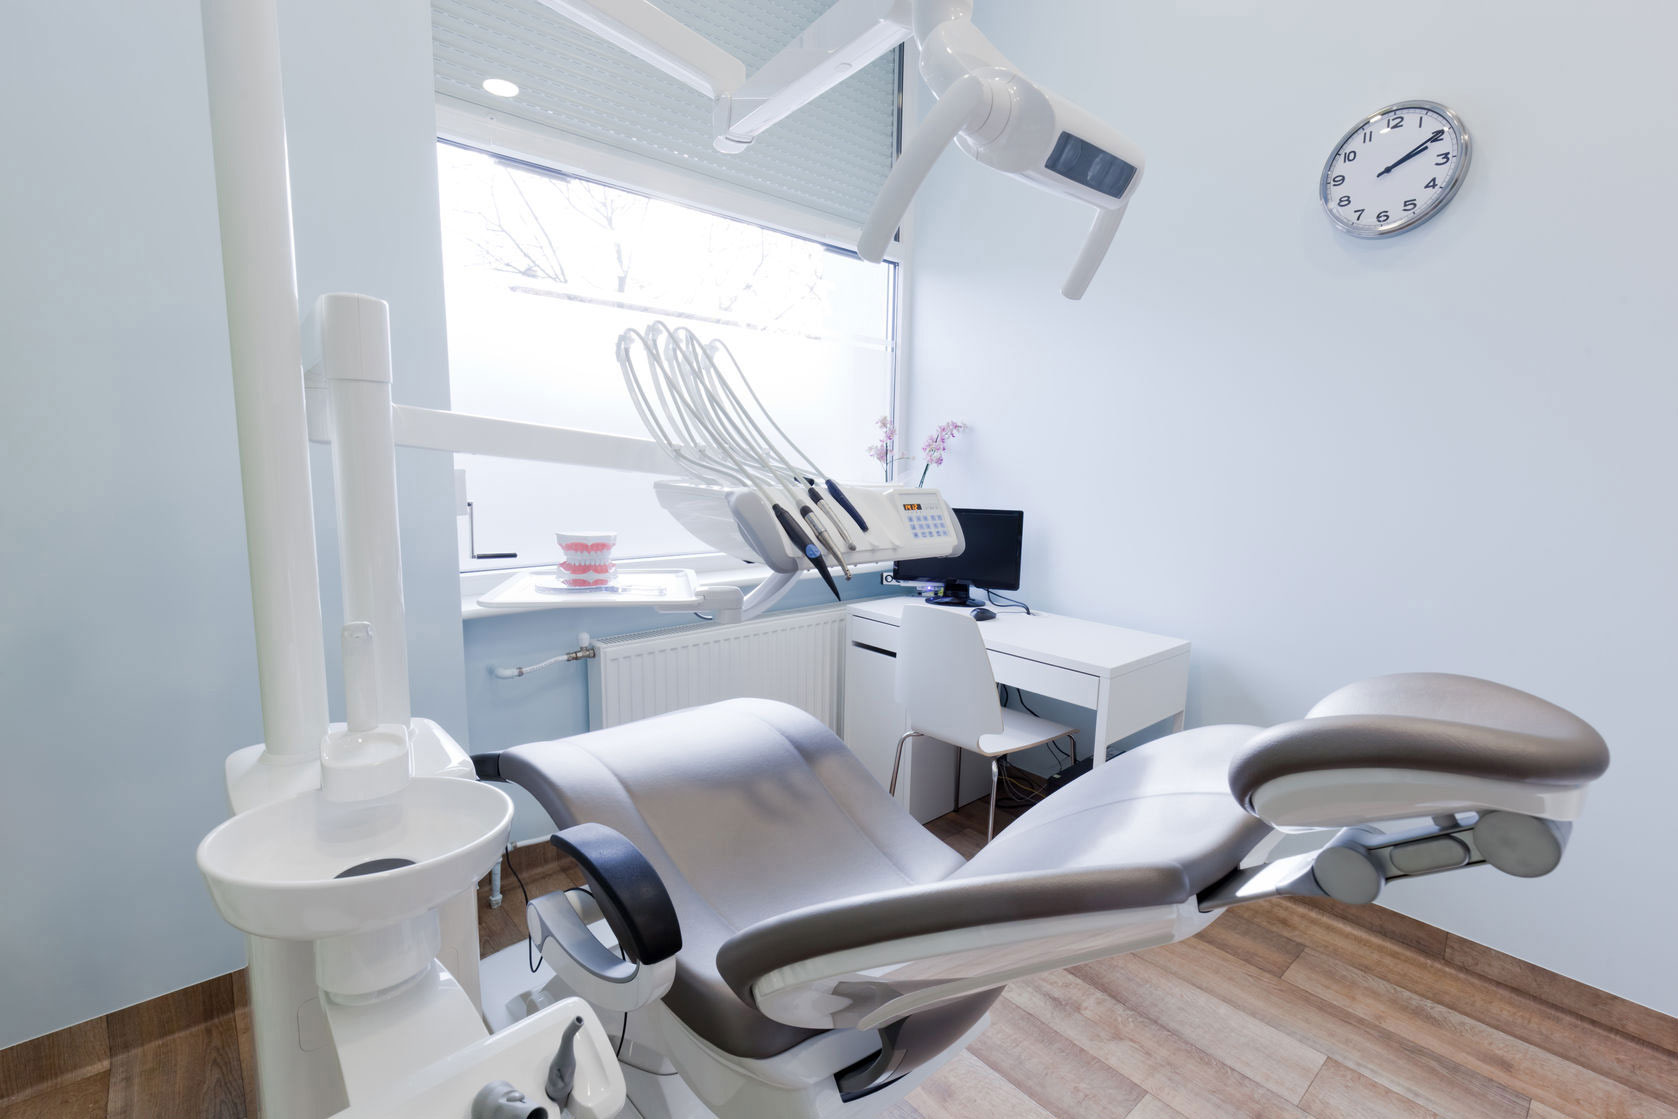 Endodontic Office in Lubbock